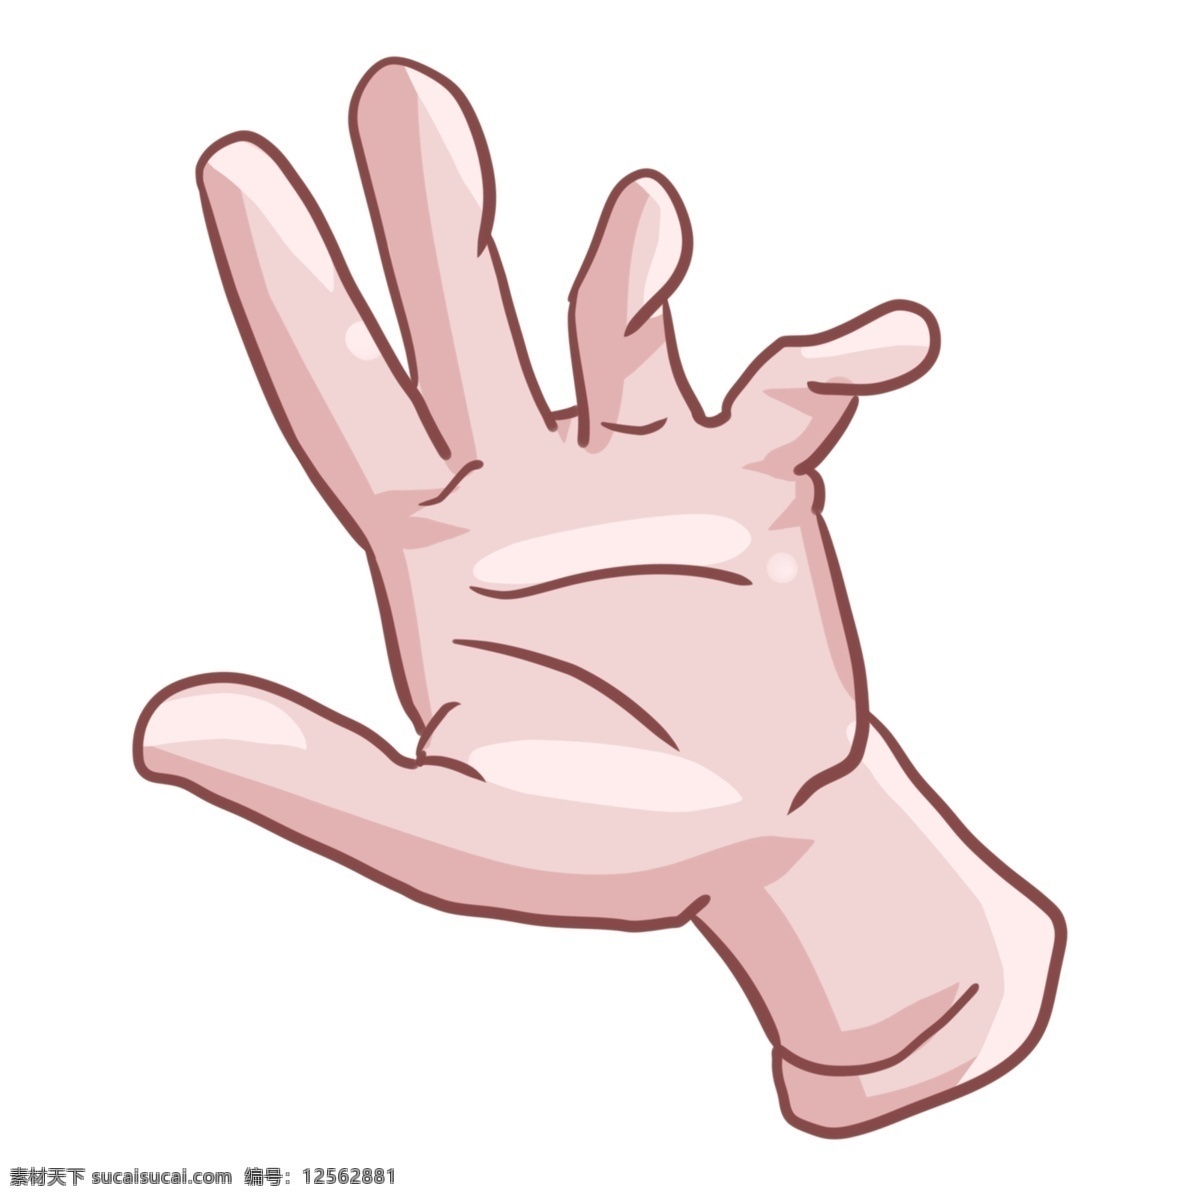 手指 手势 卡通 插画 手指的手势 卡通插画 手势插画 摆姿势 肢体语言 手语 哑语 比划 漂亮的手势